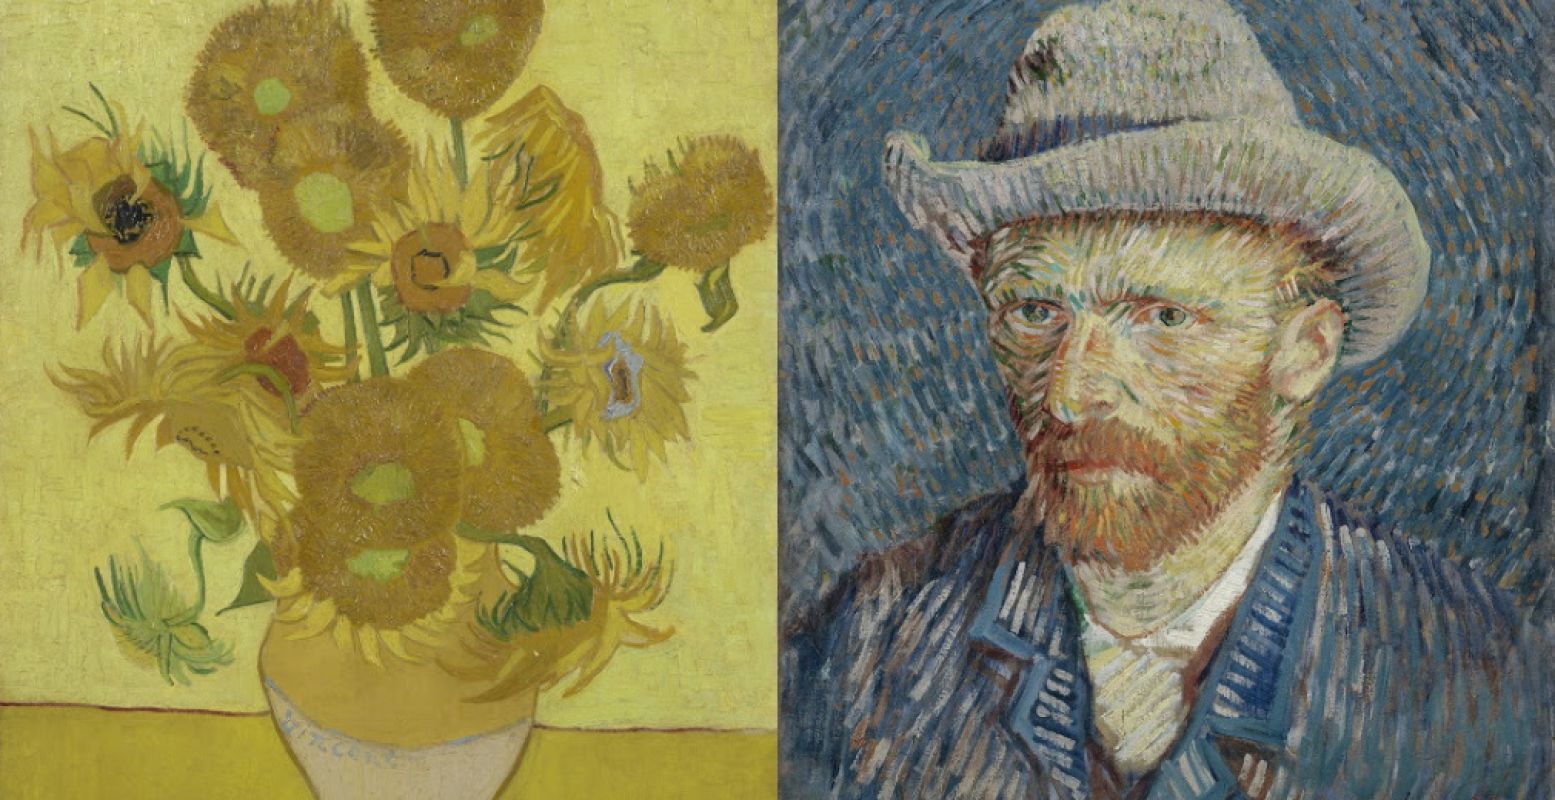 Links: Zonnebloemen, Vincent van Gogh, januari 1889. Foto: Van Gogh Museum, Amsterdam (Vincent van Gogh Stichting). Rechts: Zelfportret met grijze vilthoed, Vincent van Gogh, september-oktober 1887. Foto: Van Gogh Museum, Amsterdam (Vincent van Gogh Stichting).